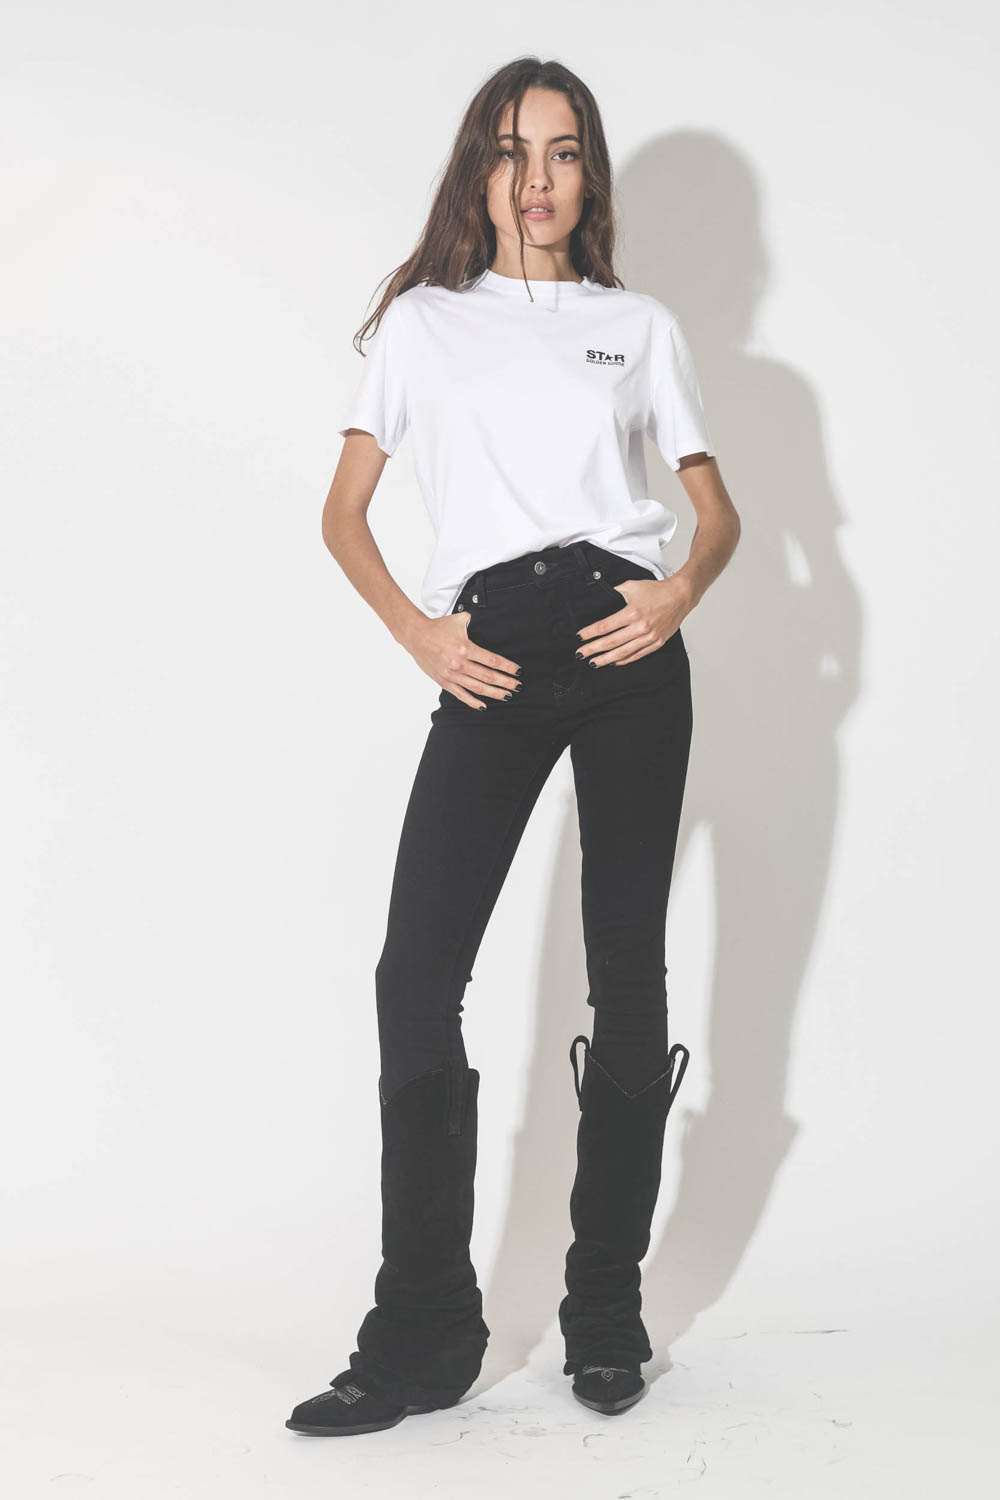 Tee-shirt manches courtes blanc logo noir étoile dans le dos noire Golden Goose. Porté avec un jeans noir et des bottes santiags noirs.